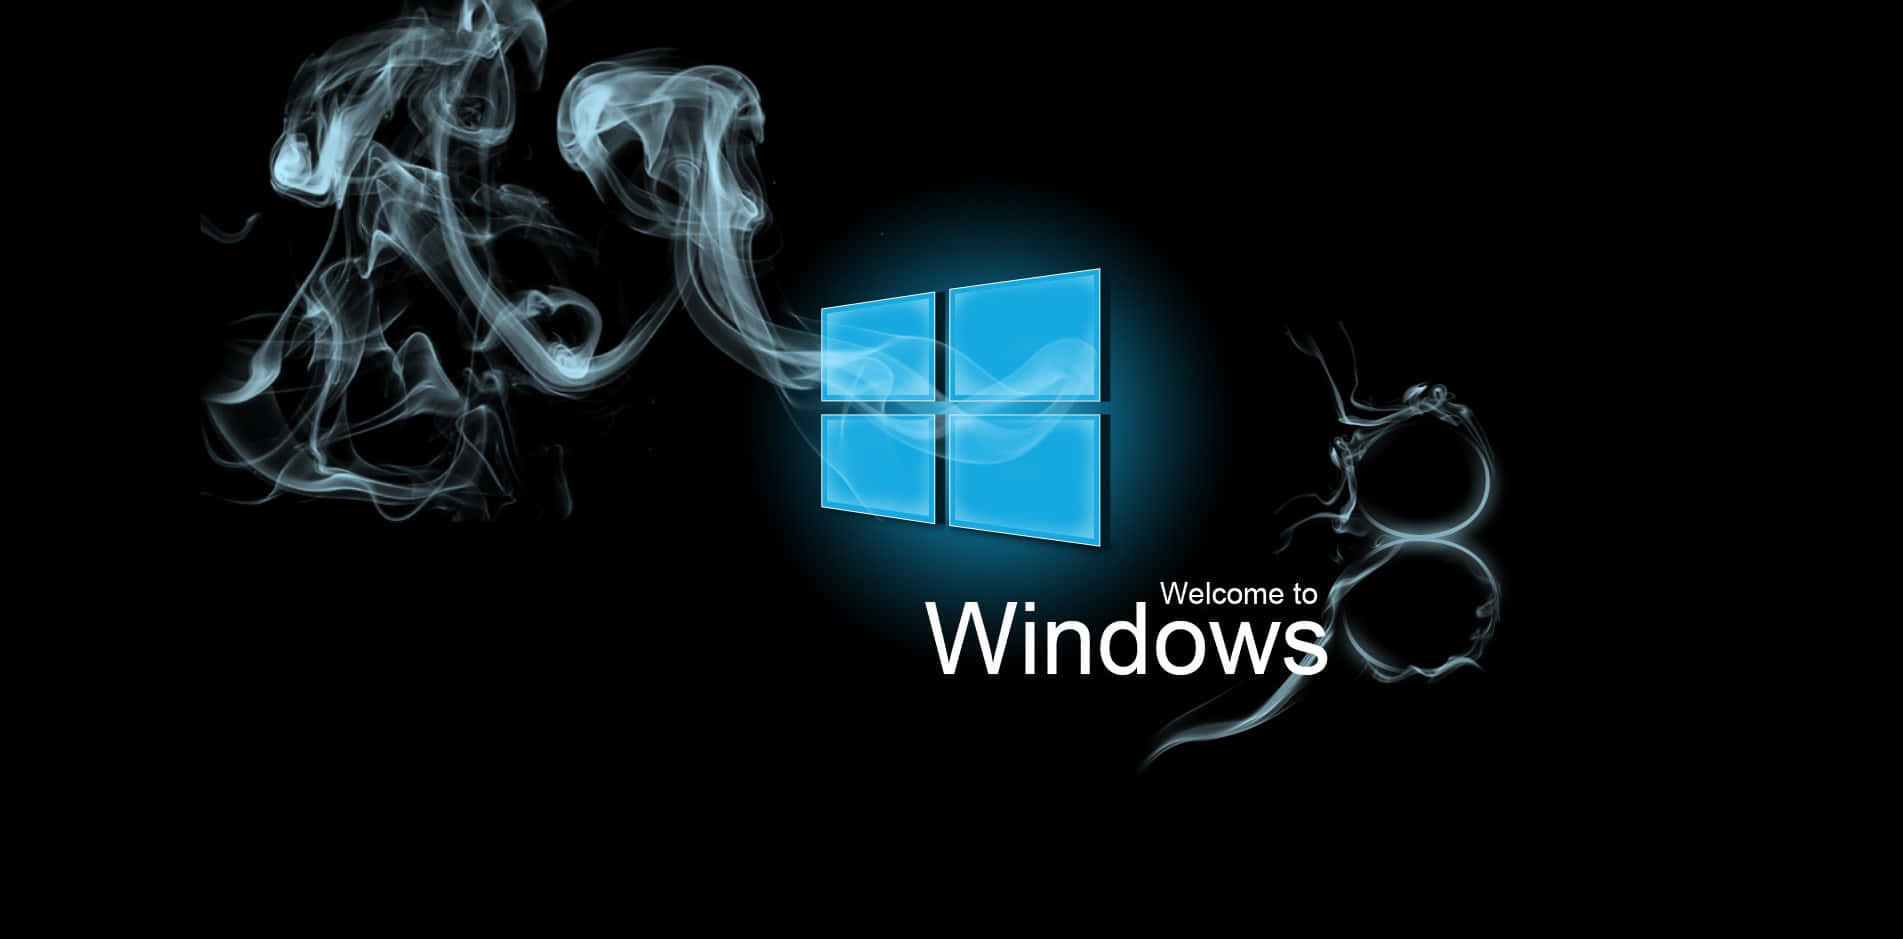 Windows8 Hintergrund 1903 X 939